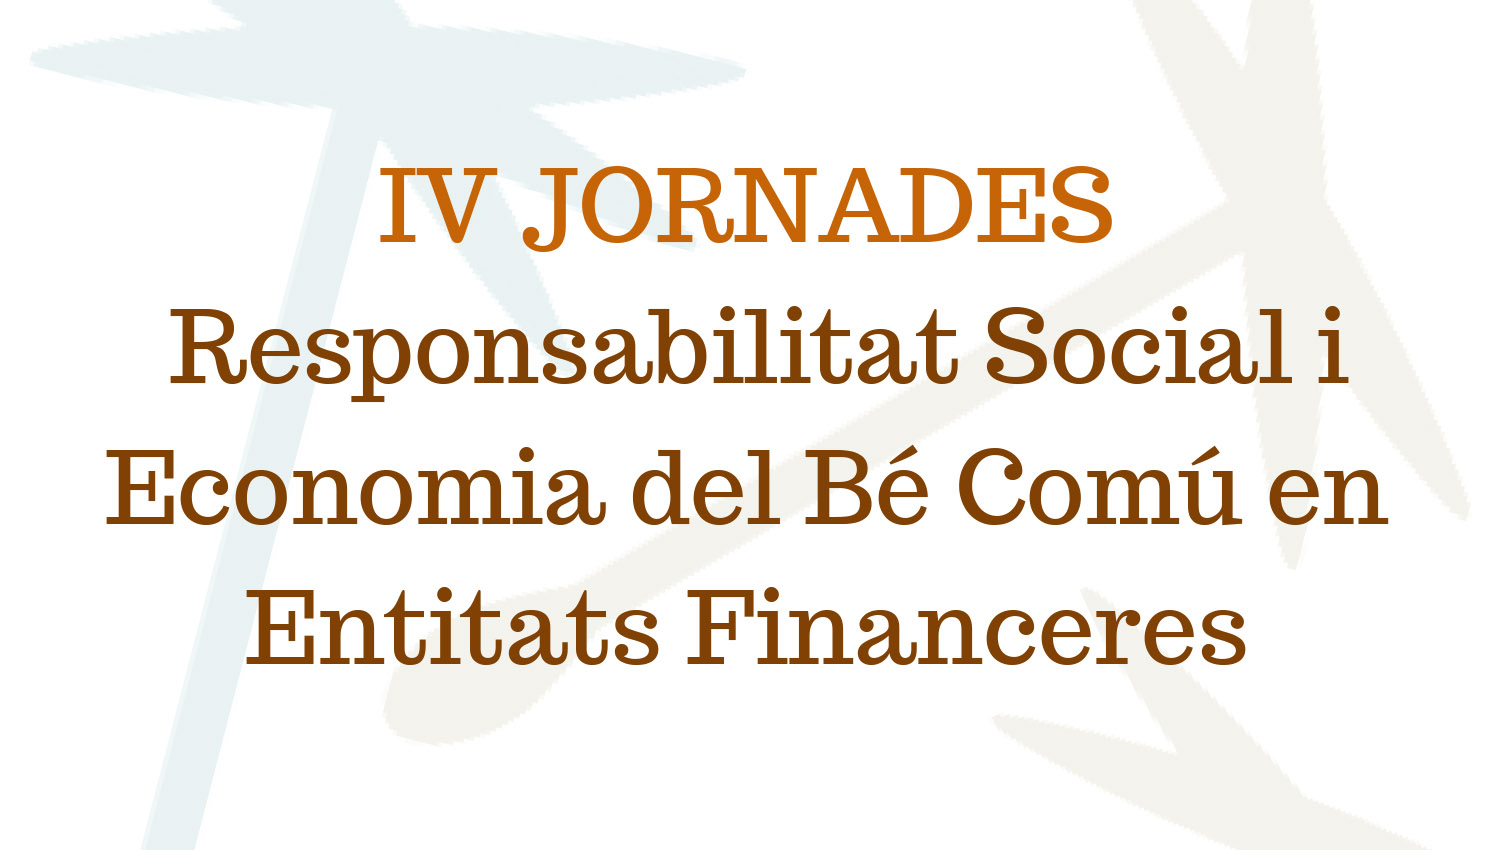 IV JORNADES
Responsabilitat Social i Economia del Bé Comú en Entitats Finan